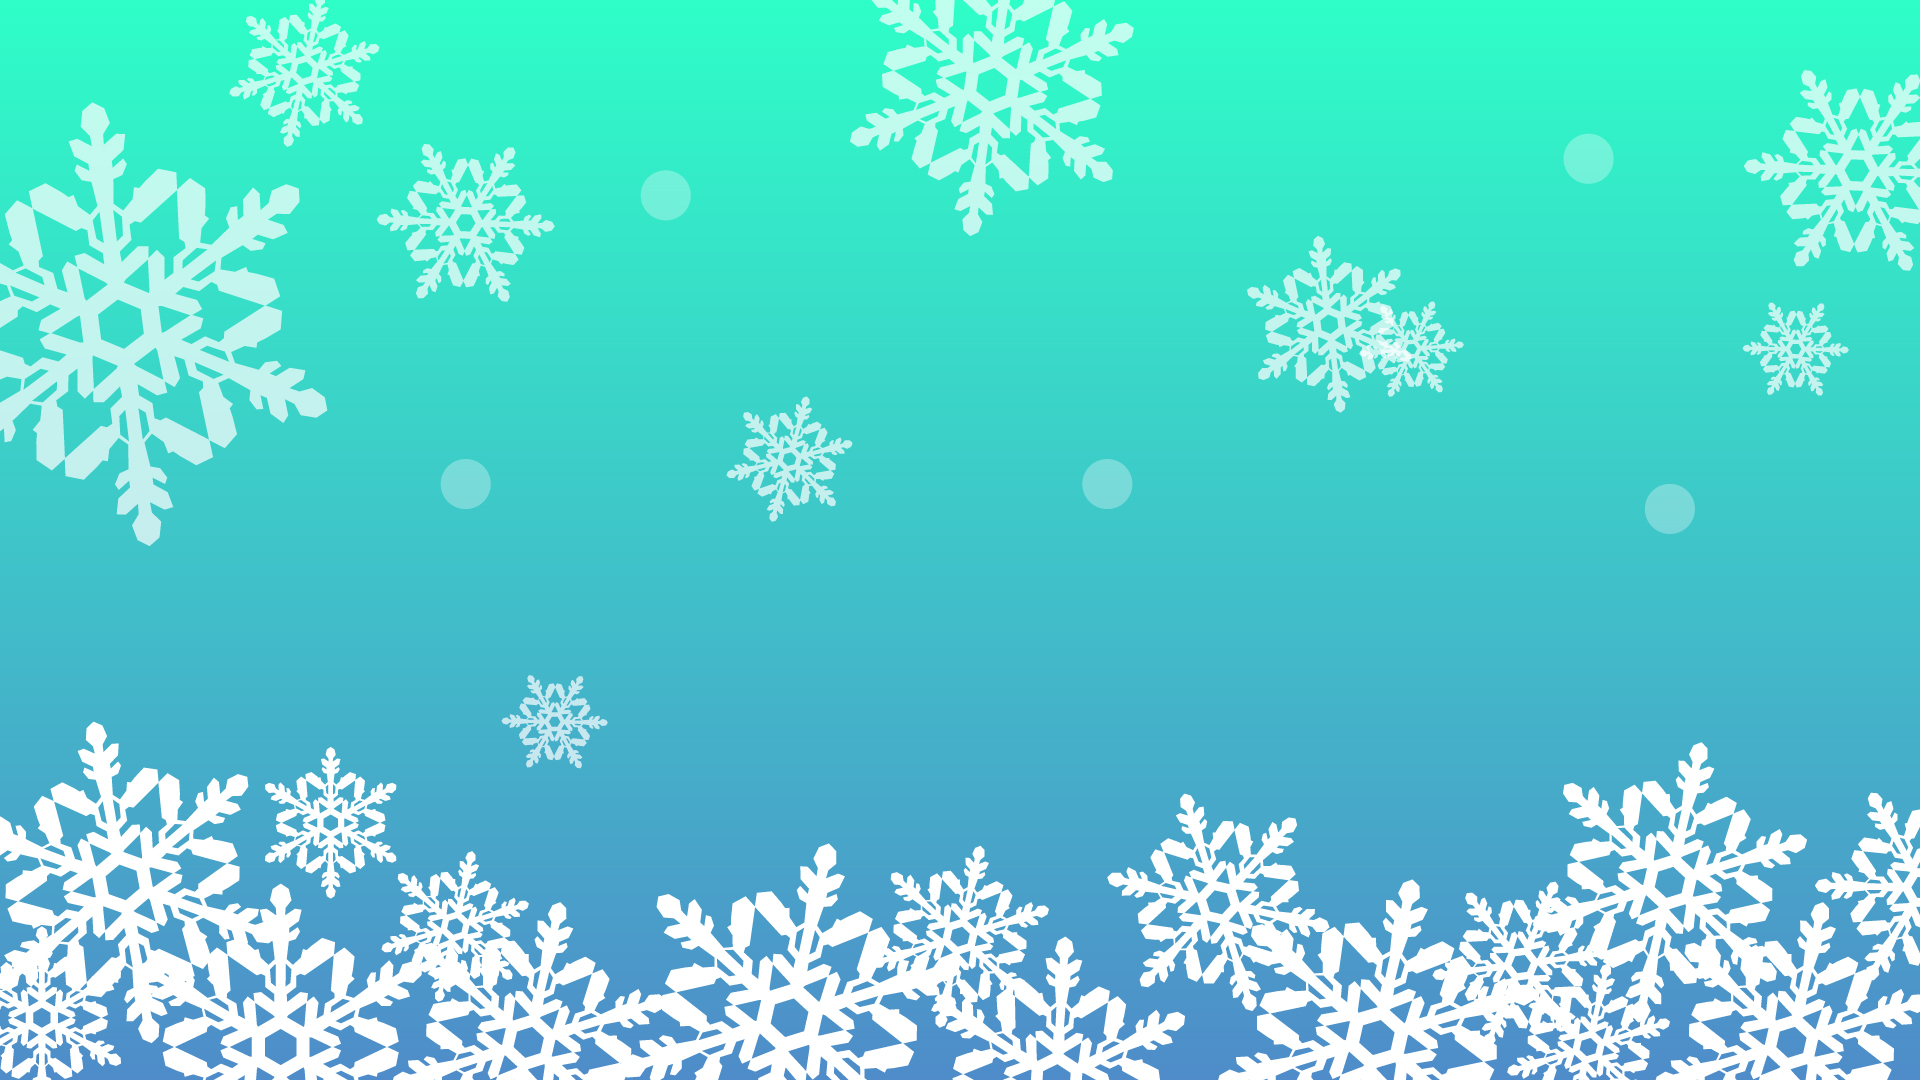 冬をイメージした雪の結晶の壁紙 背景素材 1 9px 1 080px イラスト無料 かわいいテンプレート